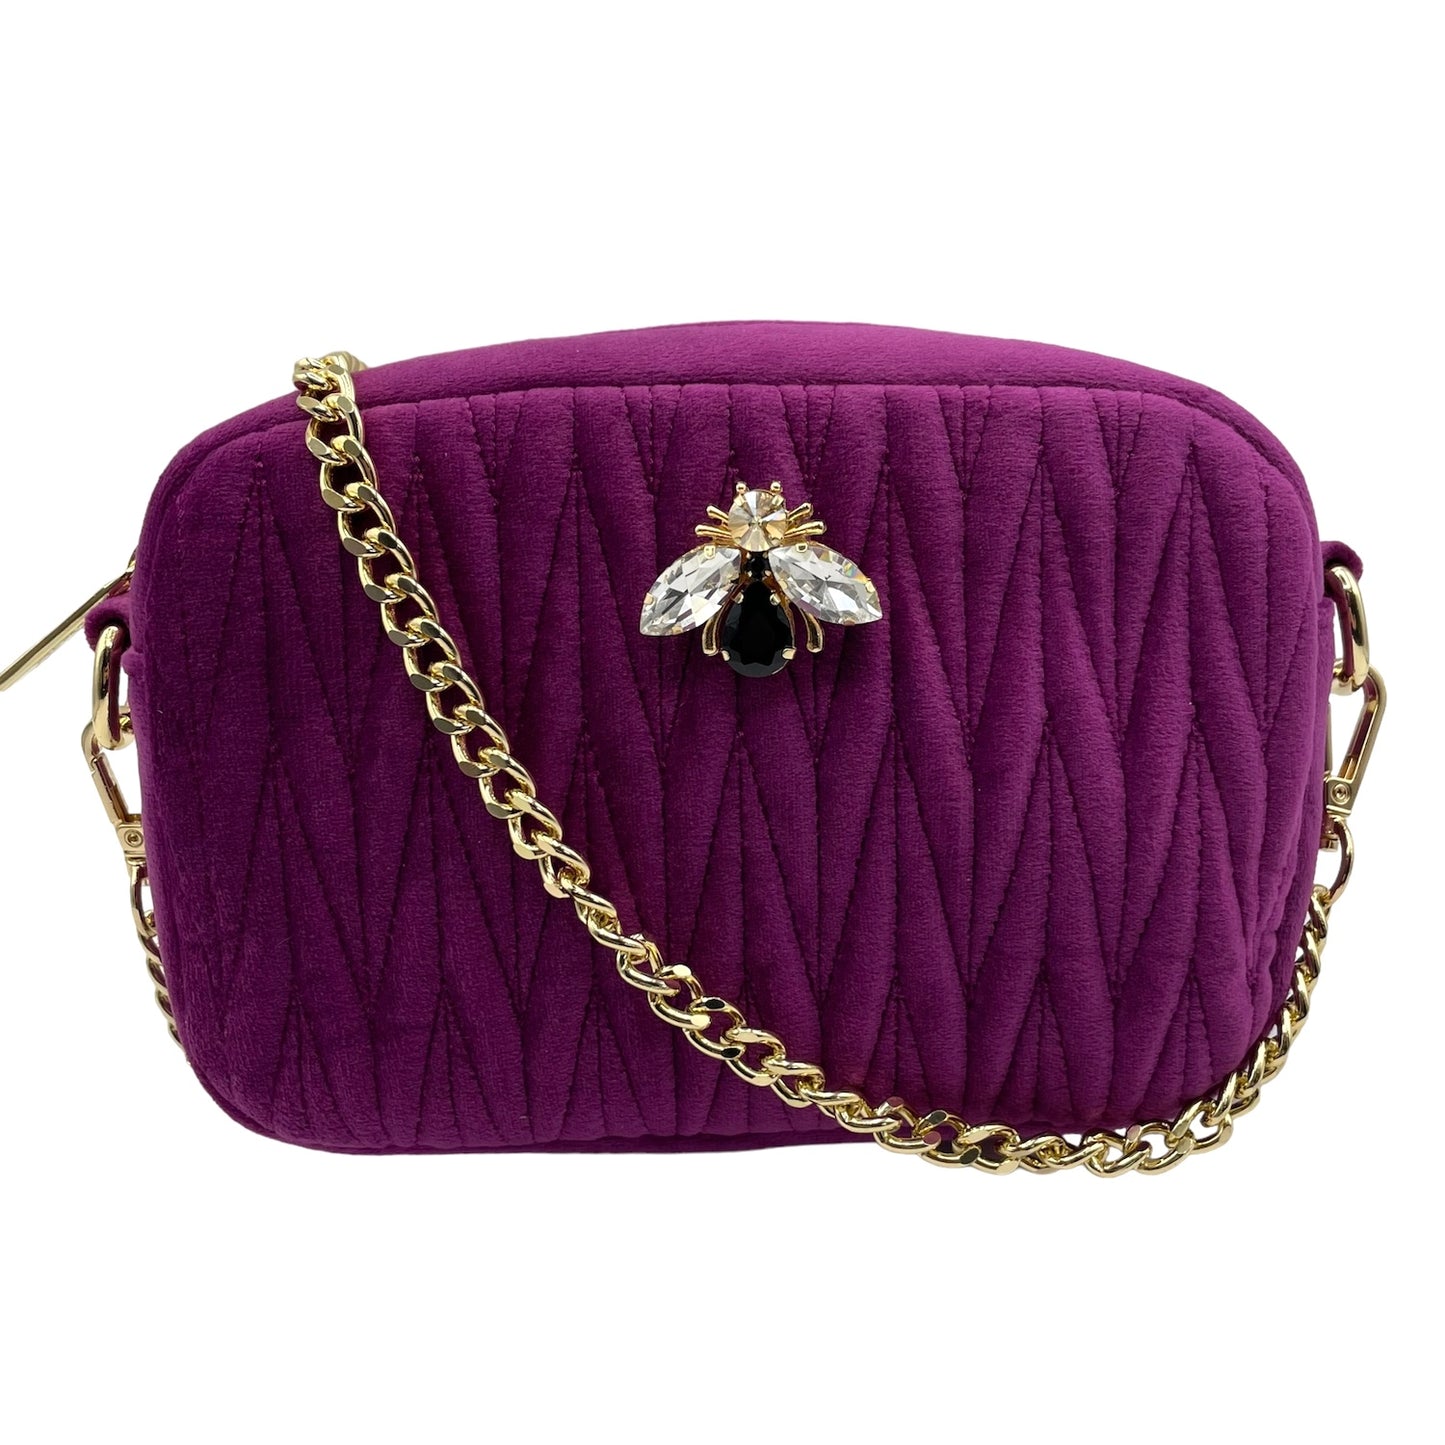 Velvet Rivington handbag in fuchsia, recycled velvet